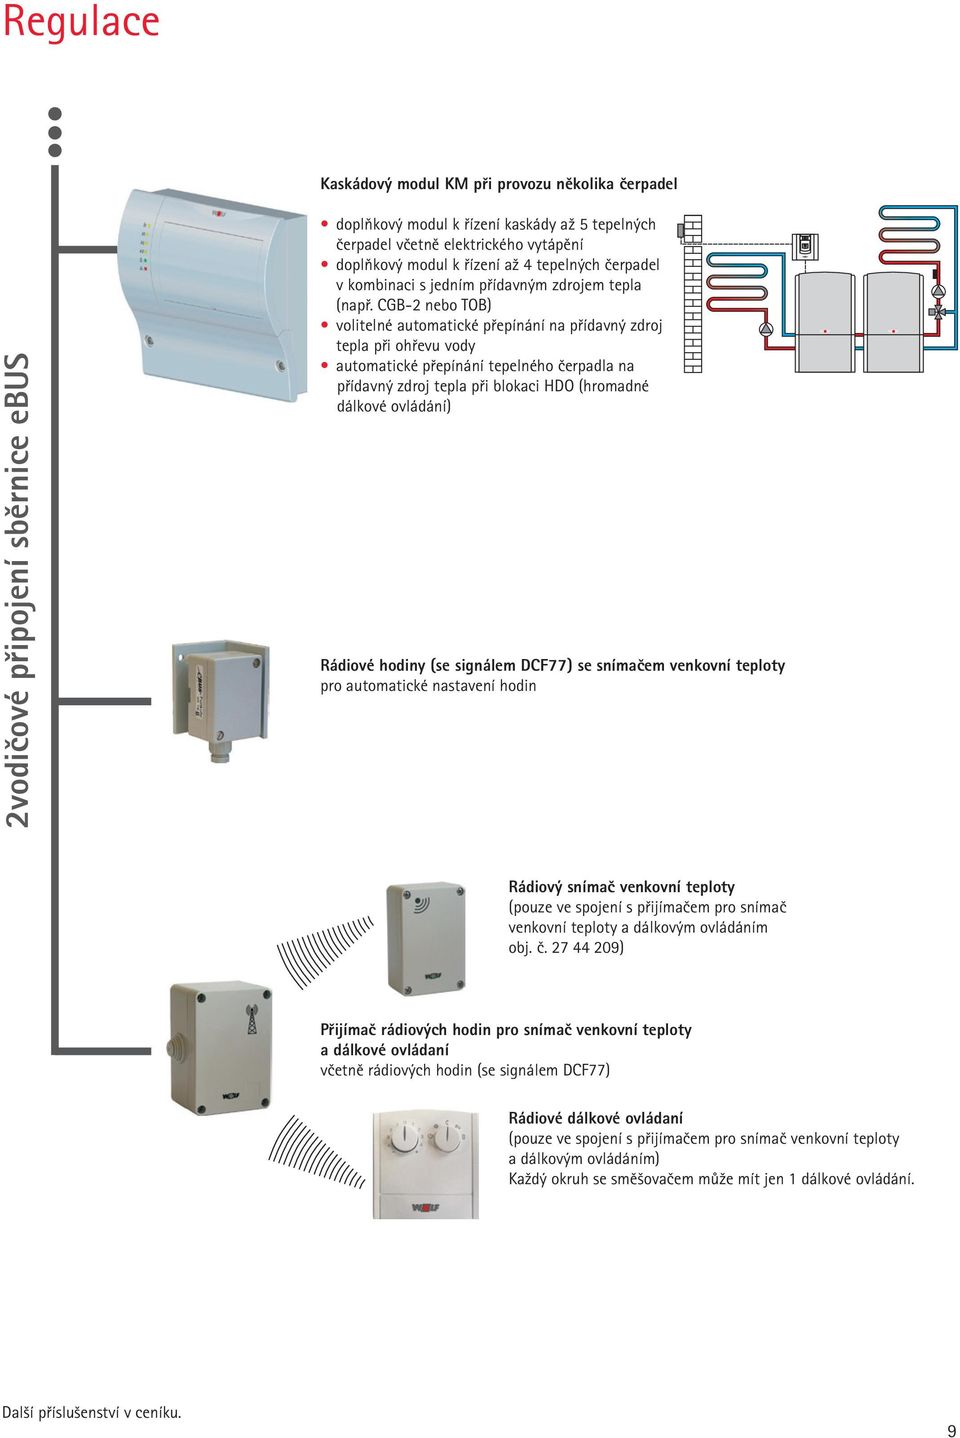 CGB-2 nebo TOB) volitelné automatické přepínání na přídavný zdroj tepla při ohřevu vody automatické přepínání tepelného čerpadla na přídavný zdroj tepla při blokaci HDO (hromadné dálkové ovládání)